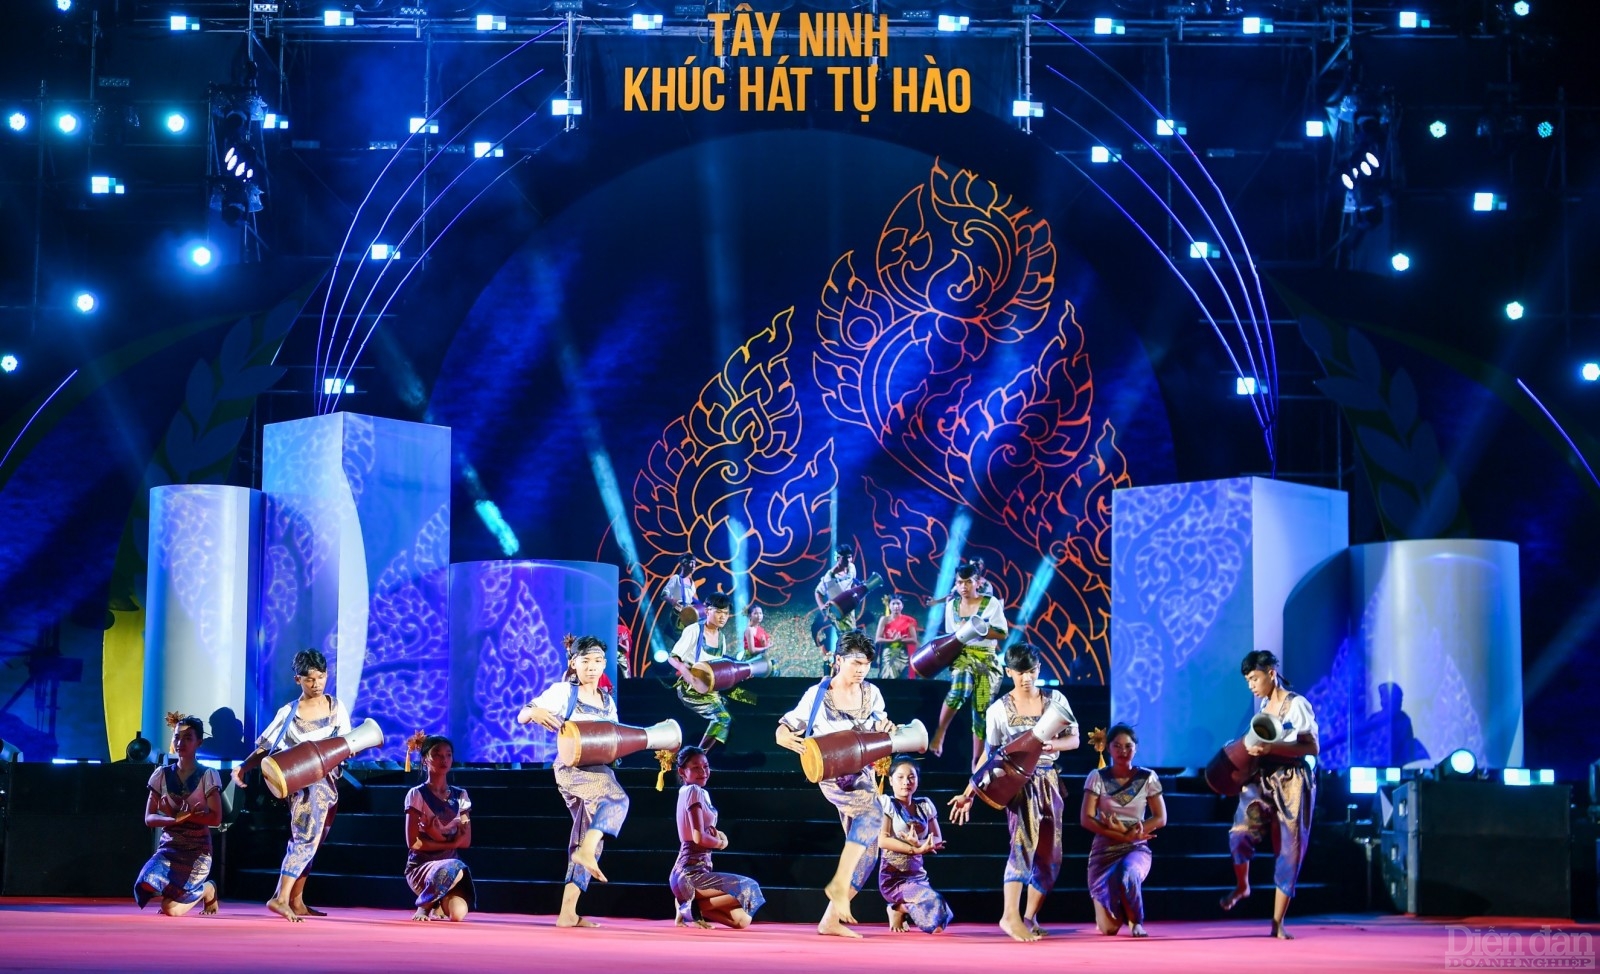 Hơn 100 nghệ nhân, nghệ sĩ và người dân đang sinh sống tại Tây Ninh tái hiện các di sản văn hoá phi vật thể qua màn dân vũ độc đáo tại chương trình. Các di sản văn hoá như múa trống Chhay dăm, đờn ca tài tử… từng được trình diễn trên đỉnh núi Bà Đen trong các dịp lễ hội, giờ đây được kết hợp với công nghệ 3D Mapping, tạo nên một hiệu ứng hết sức mới lạ.